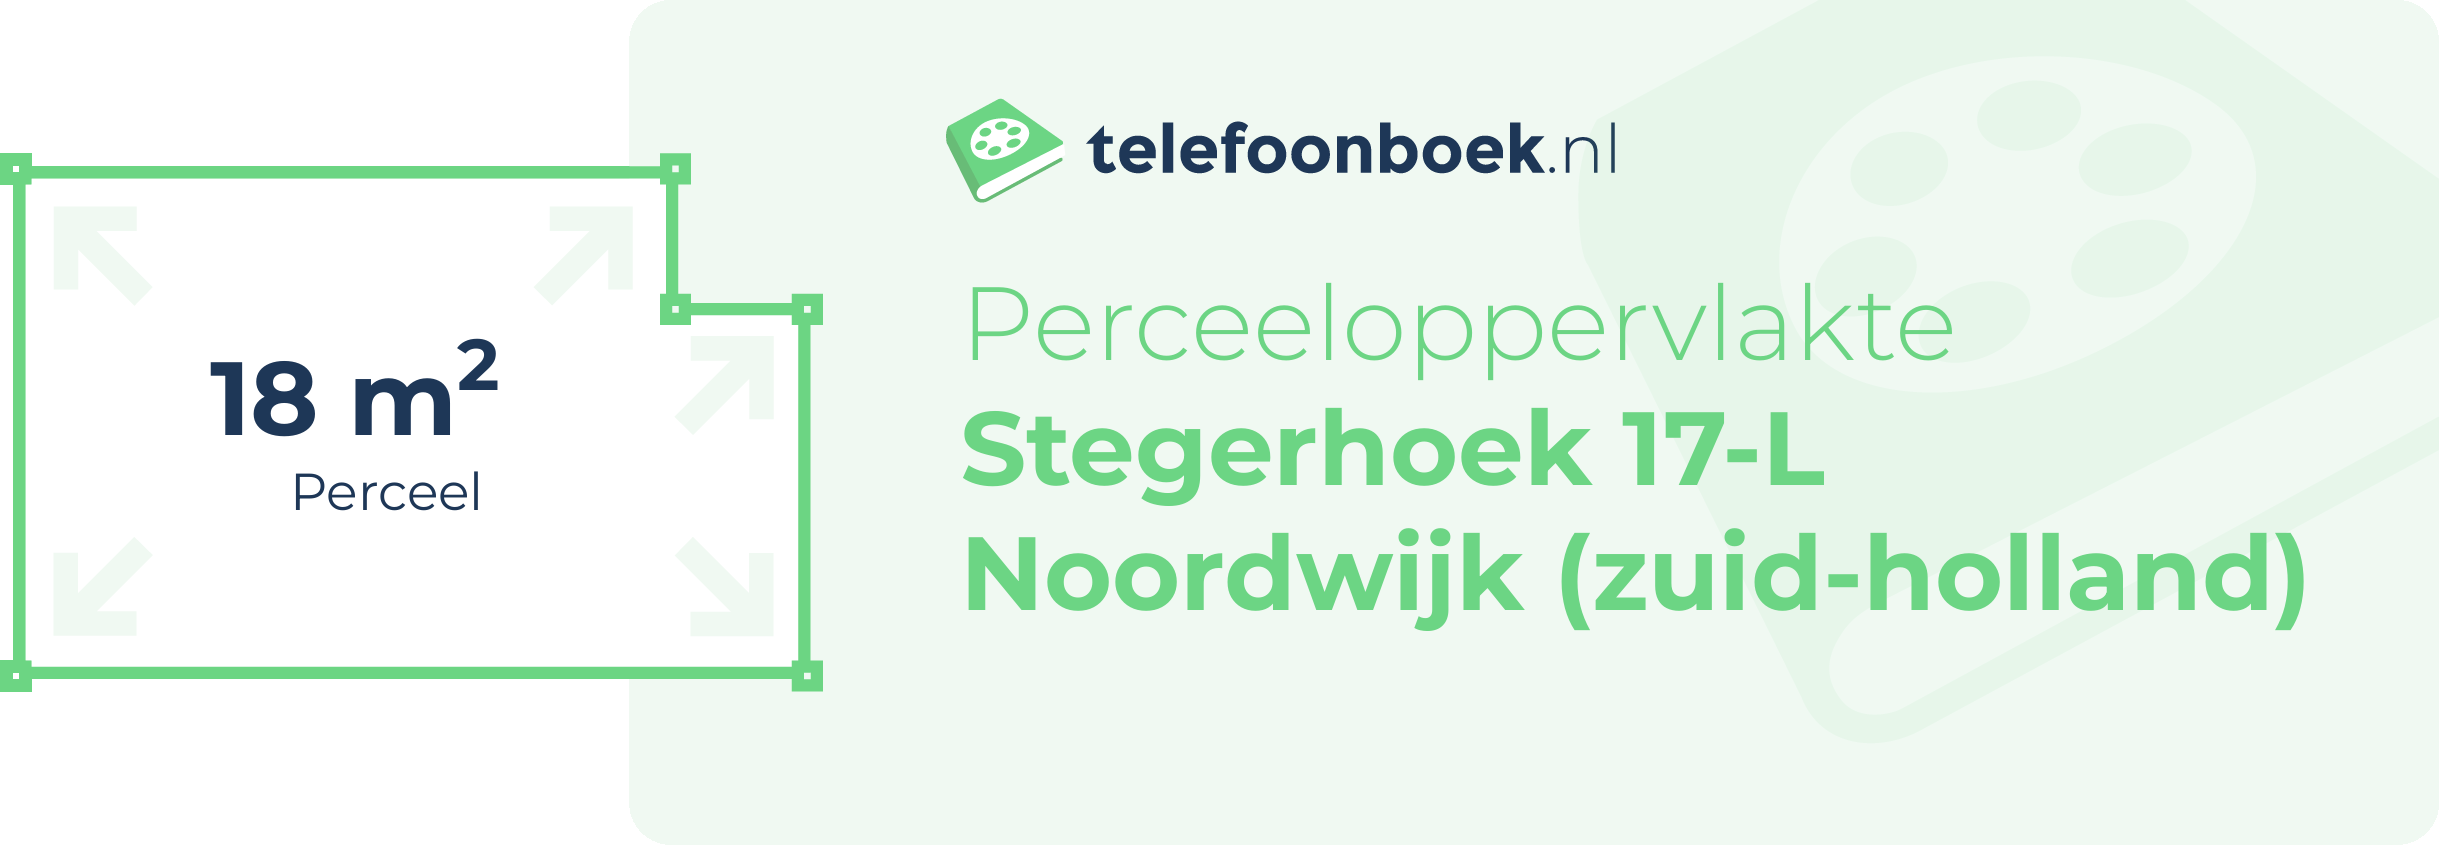 Perceeloppervlakte Stegerhoek 17-L Noordwijk (Zuid-Holland)